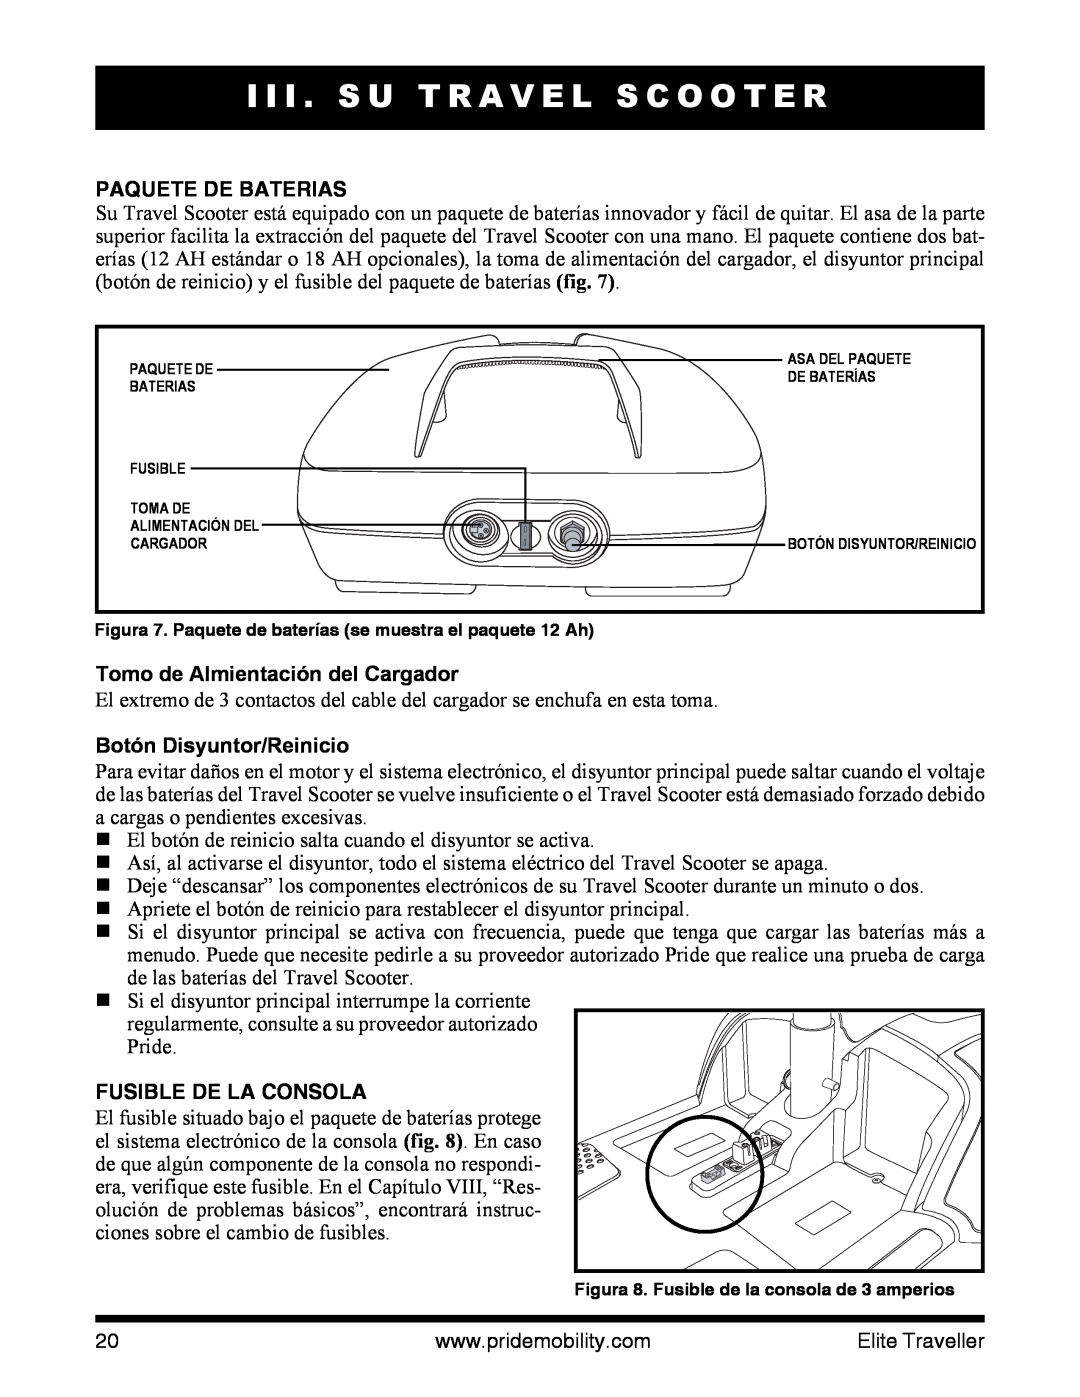 Pride Mobility SC44E, SC40E manual Paquete De Baterias, Tomo de Almientación del Cargador, Botón Disyuntor/Reinicio 